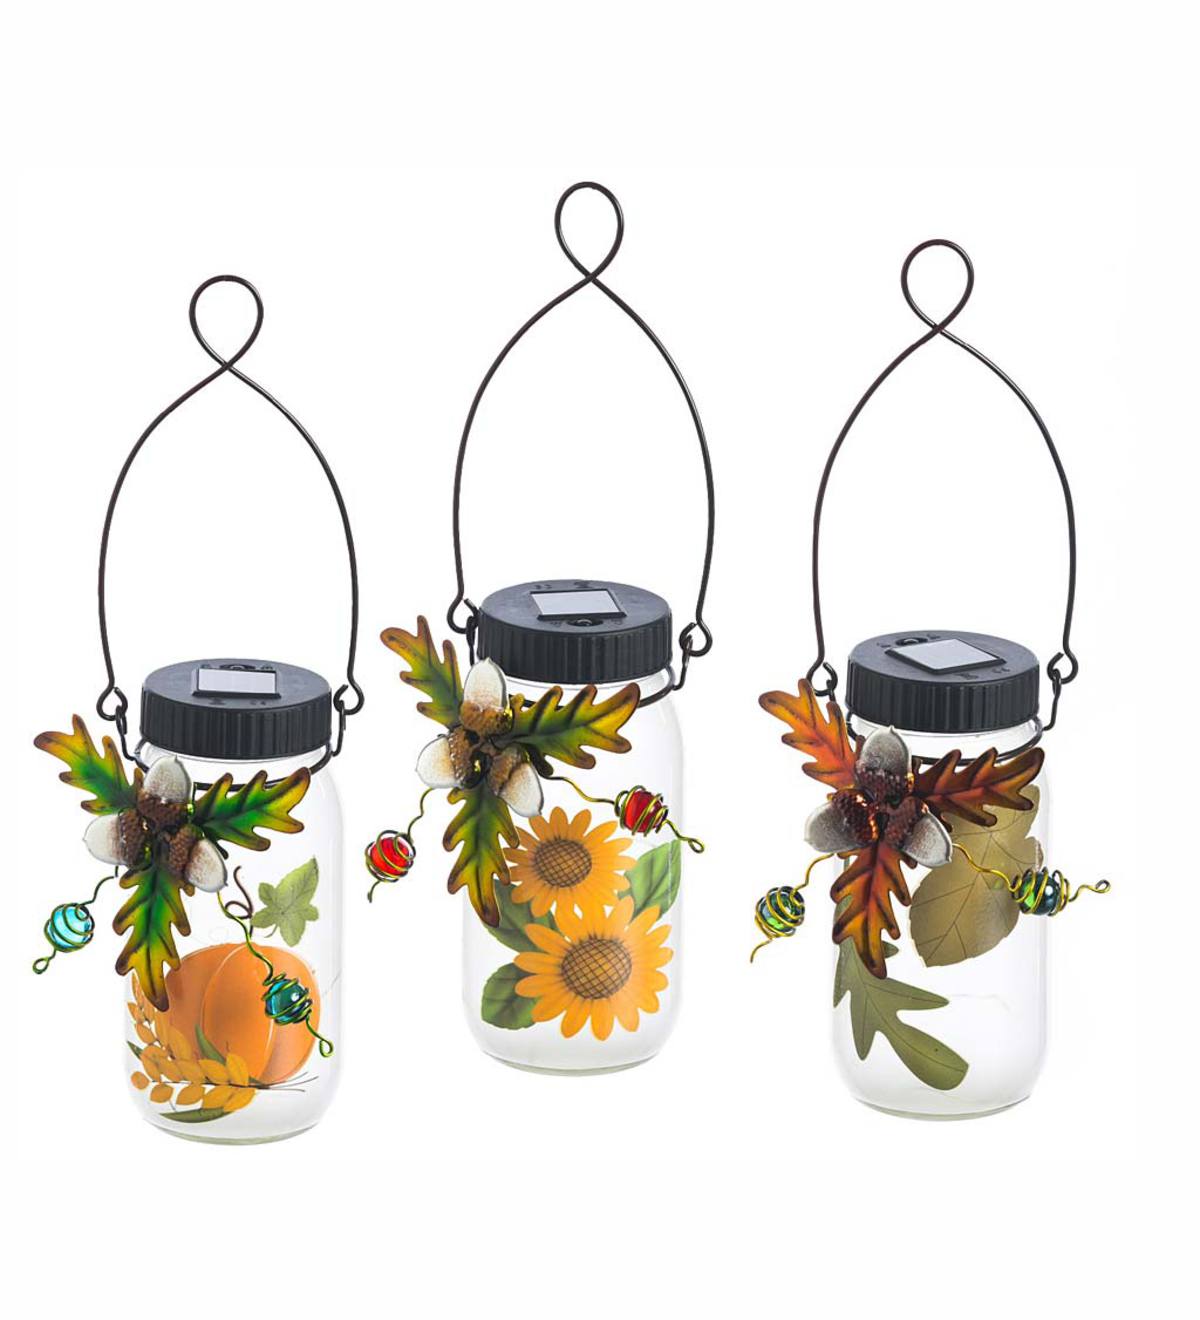 Solar Jar Lanterns with Fall Foliage, Set of 3